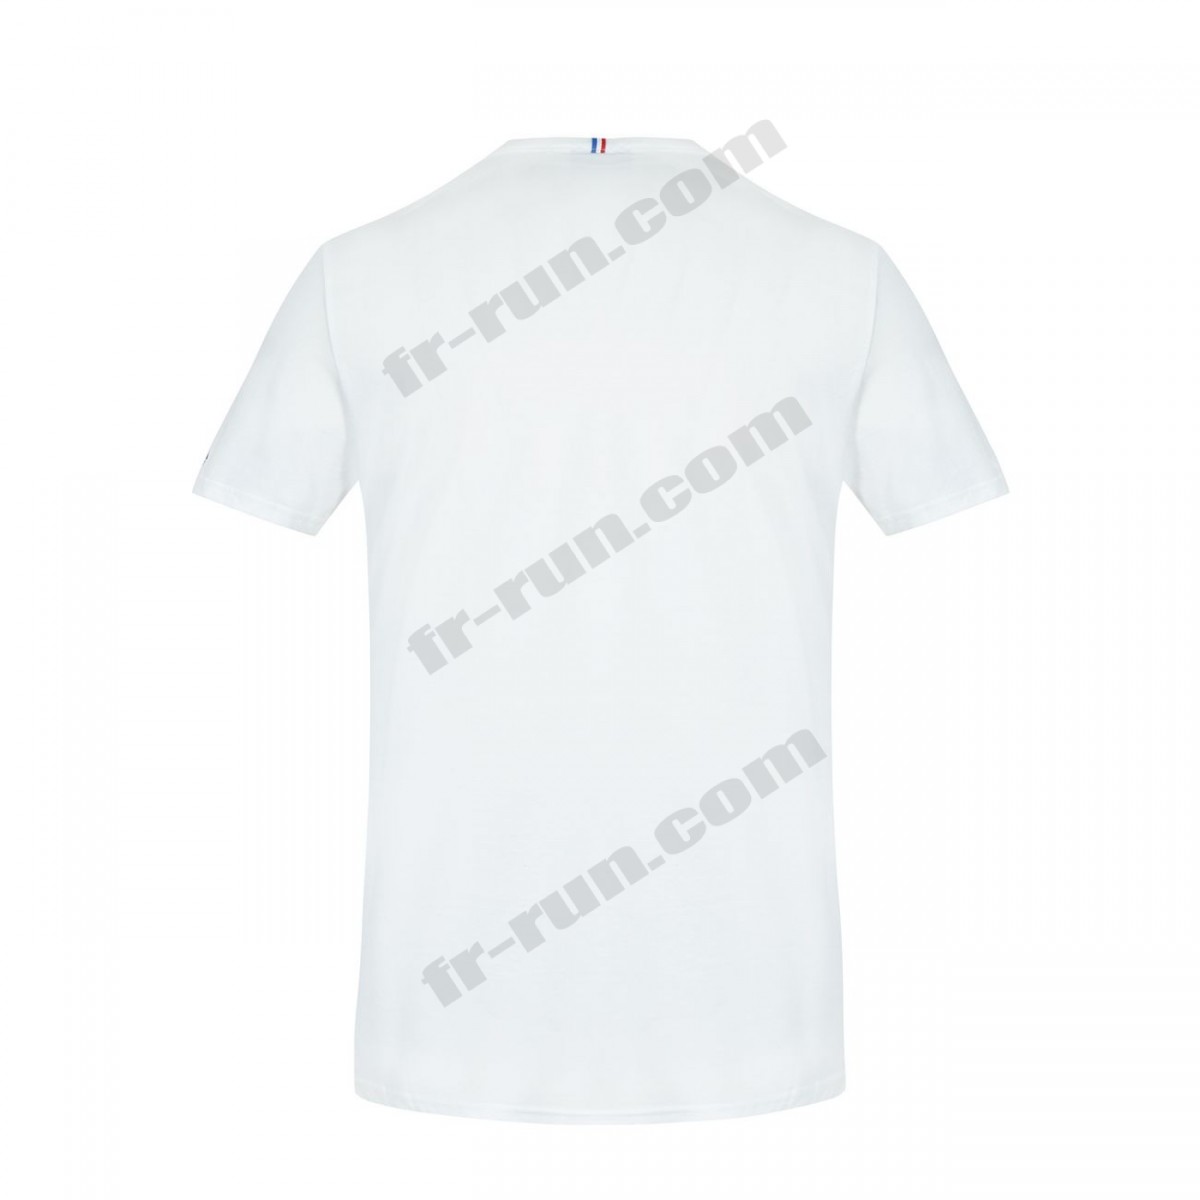 Le Coq Sportif/running adulte LE COQ SPORTIF T-shirt manches longues Équipe de France Olympique Unisexe √ Nouveau style √ Soldes - -4